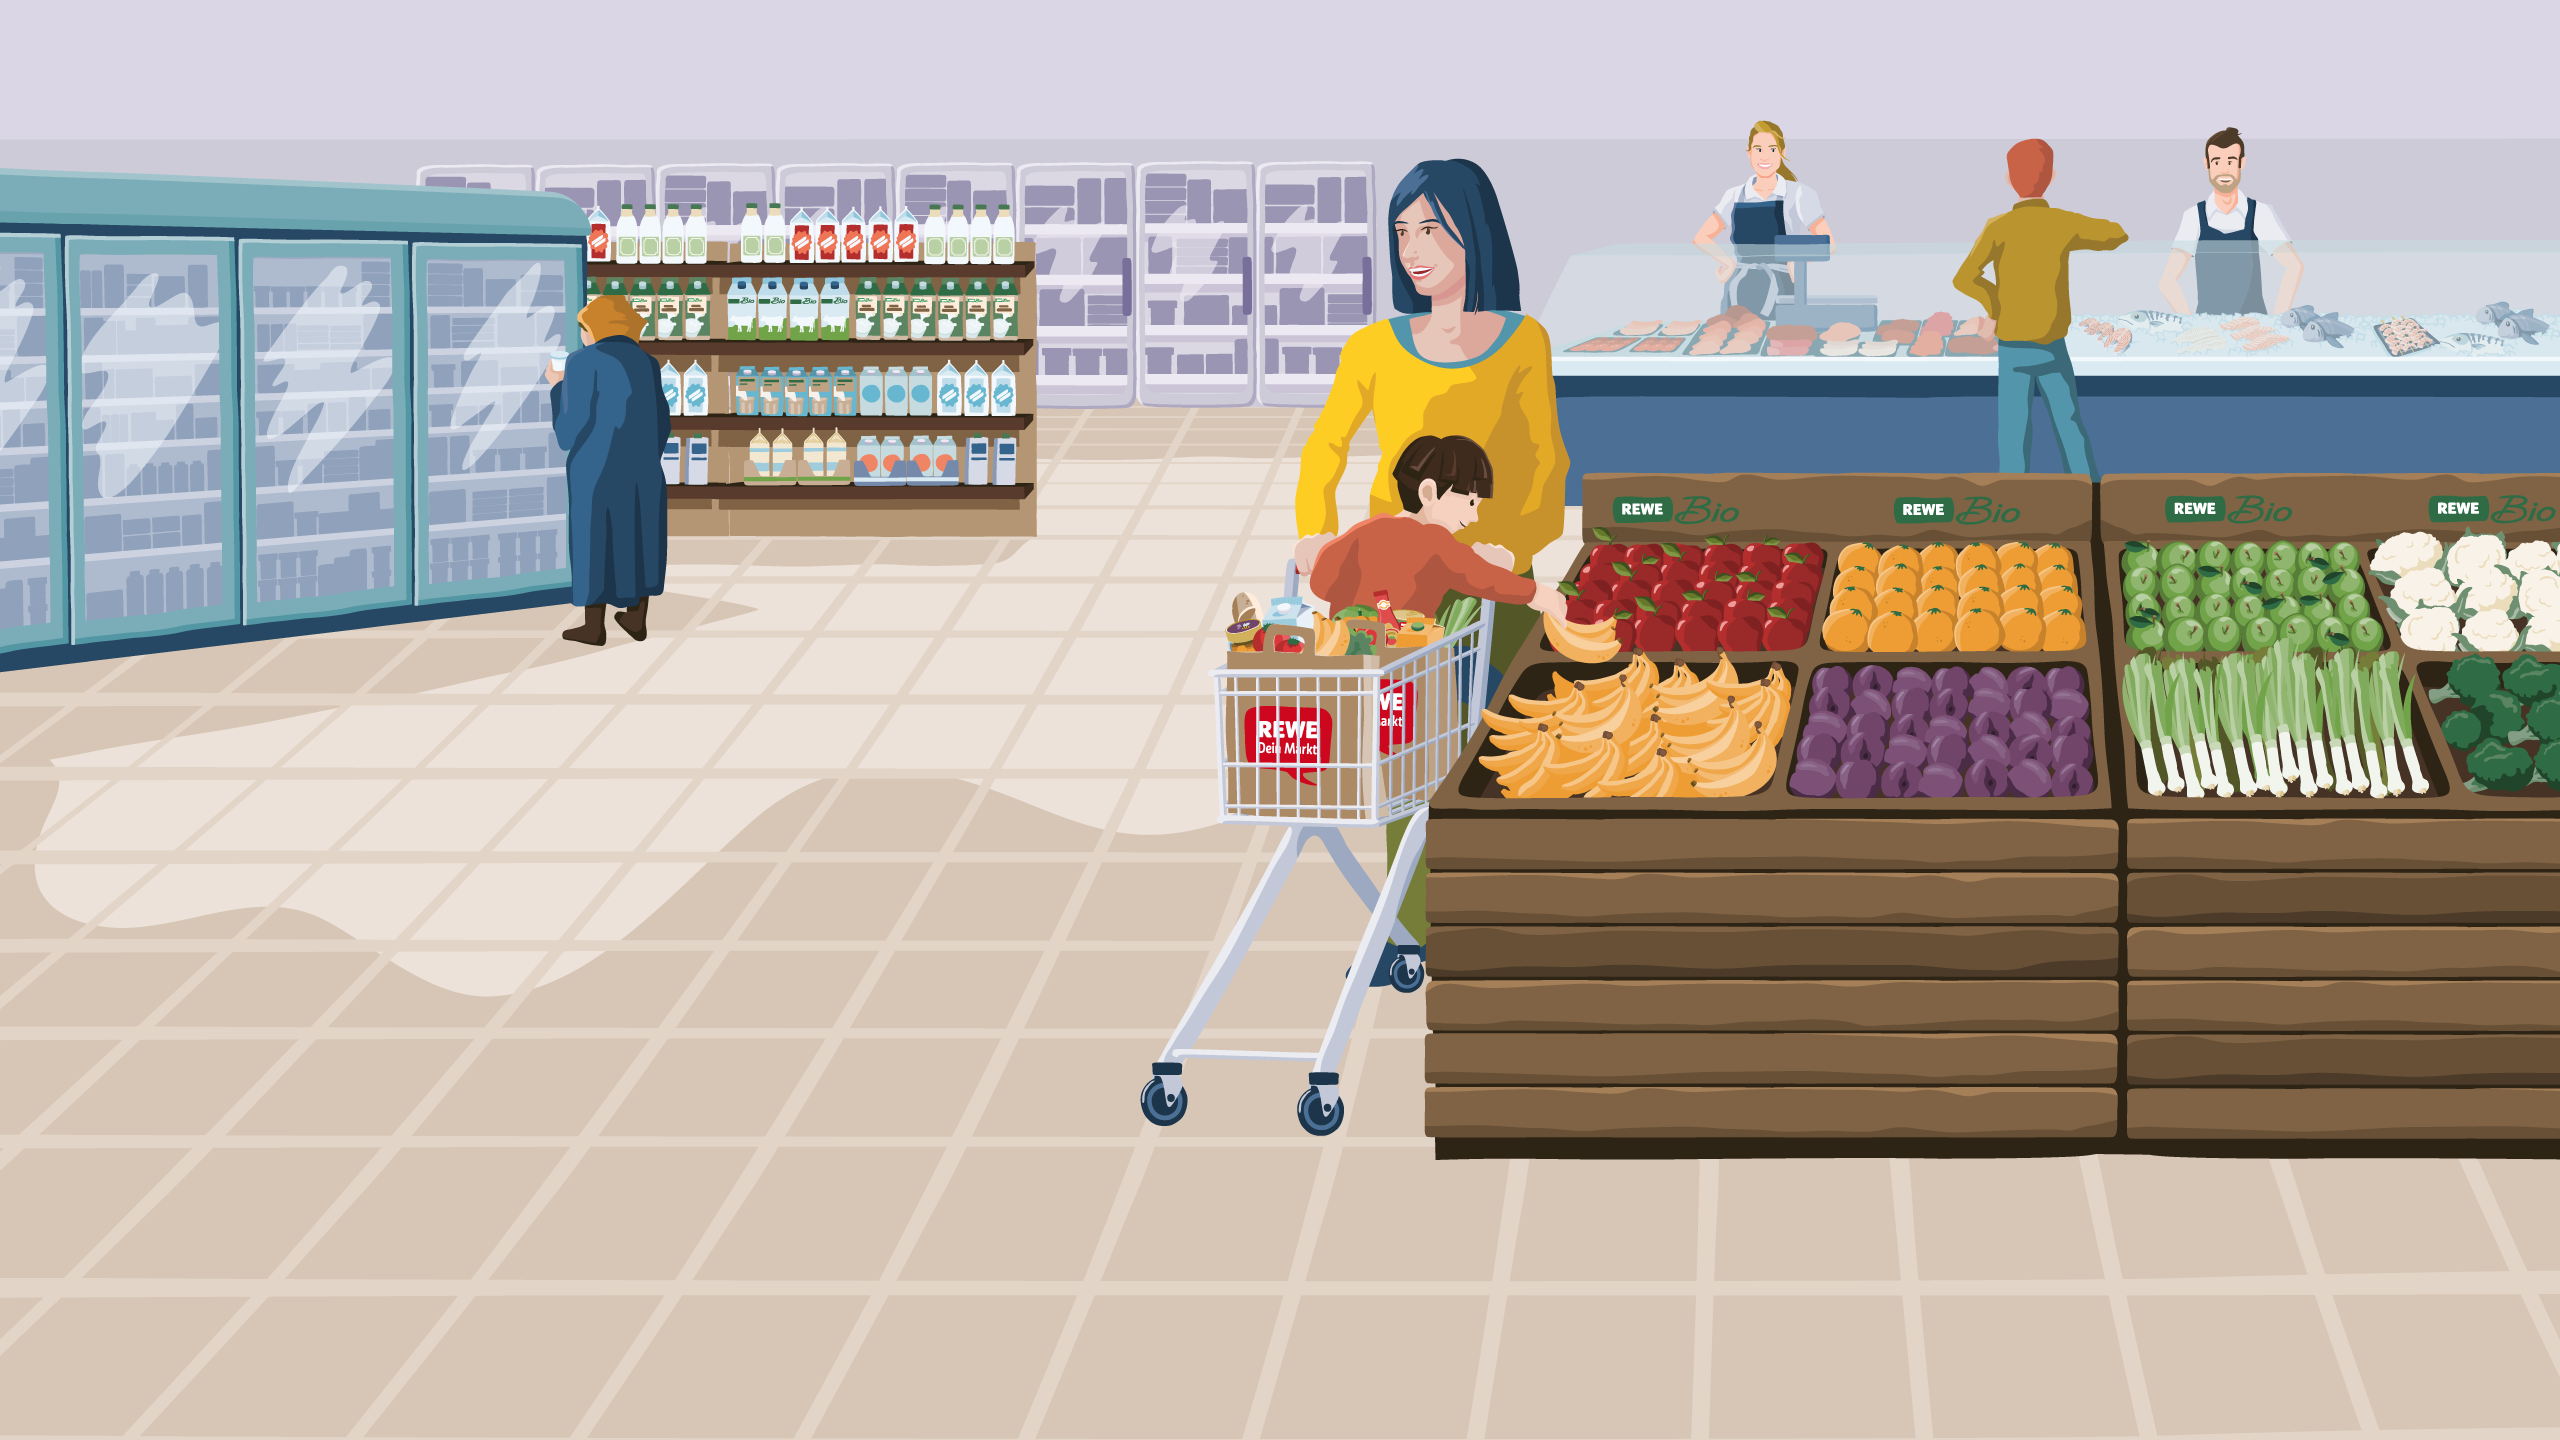 Ein illustrierter REWE Markt von innen. Im Vordergrund sieht man frisches Obst und Gemüse. Eine Mutter fährt ihr Kind im Einkaufswagen daran vorbei. Das Kind greift nach den Produkten. Im Hintergrund erkennst man ein Kühlregal, mehrere weitere Regalreihen und eine Bedientheke.